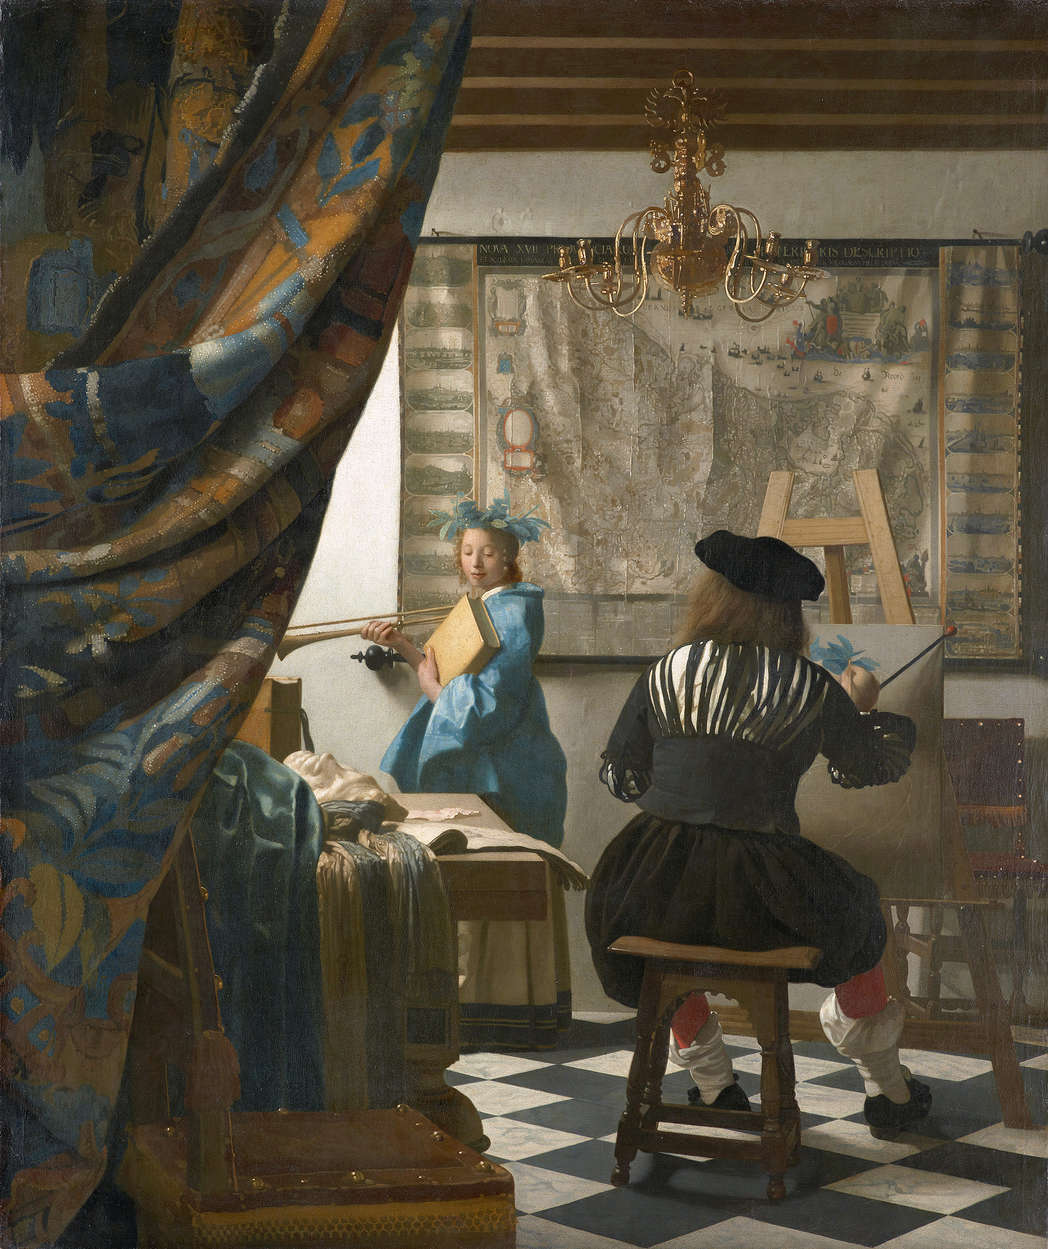             Papier peint panoramique "Vermeer dans son atelier" de Jan Vermeer
        